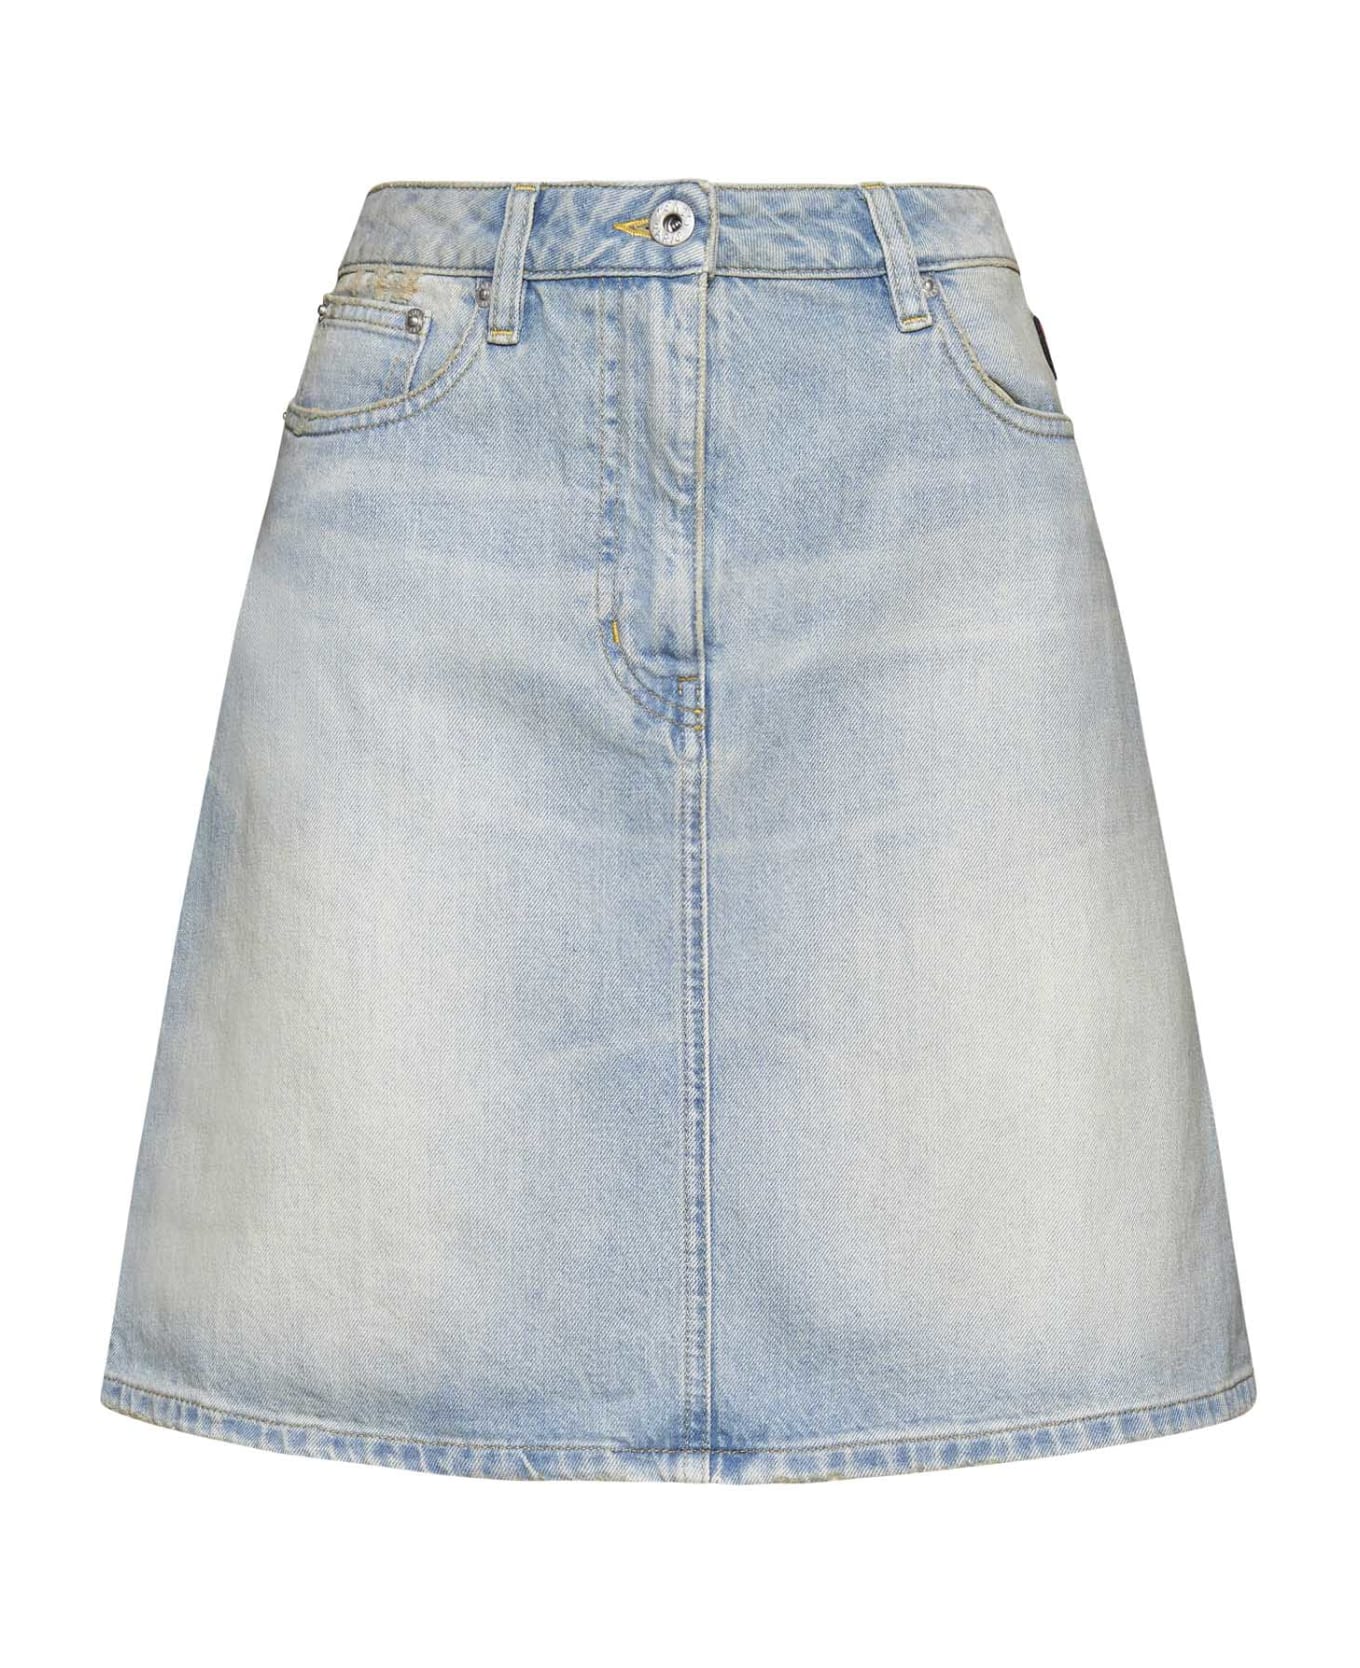 Kenzo Denim Skirt - Medium stone blue denim